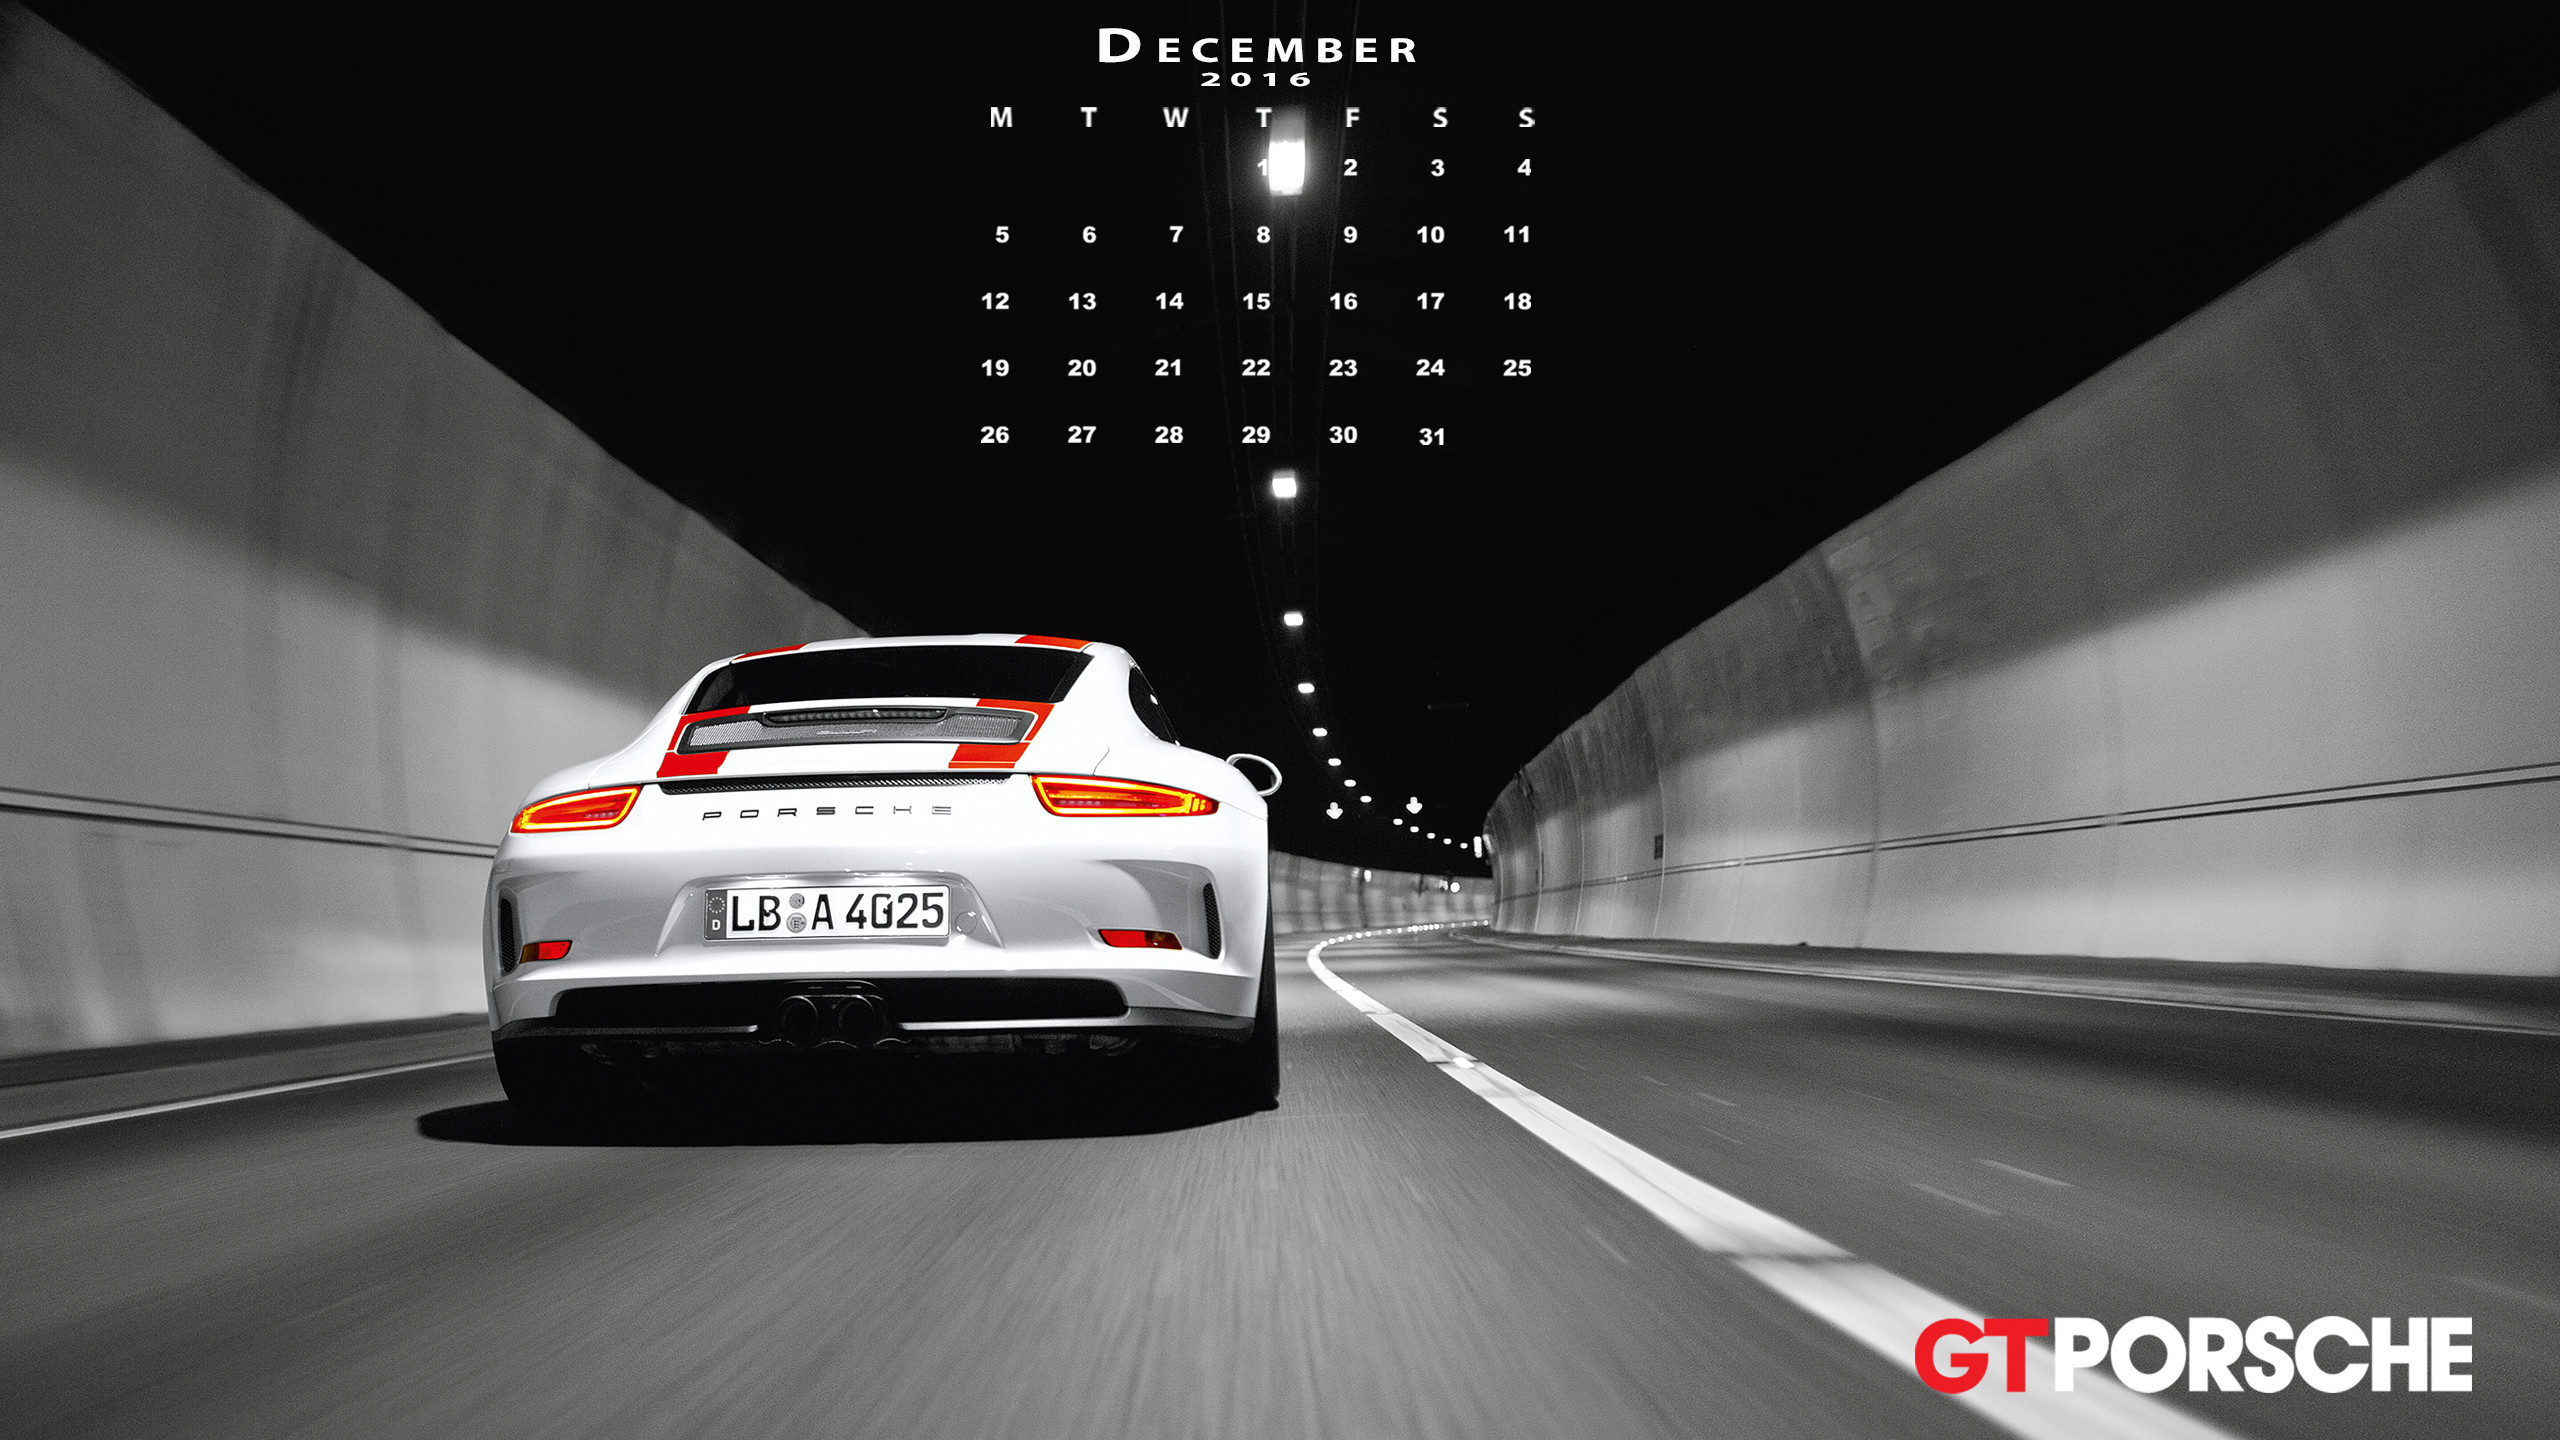 2560x1440 Porsche Wallpaper